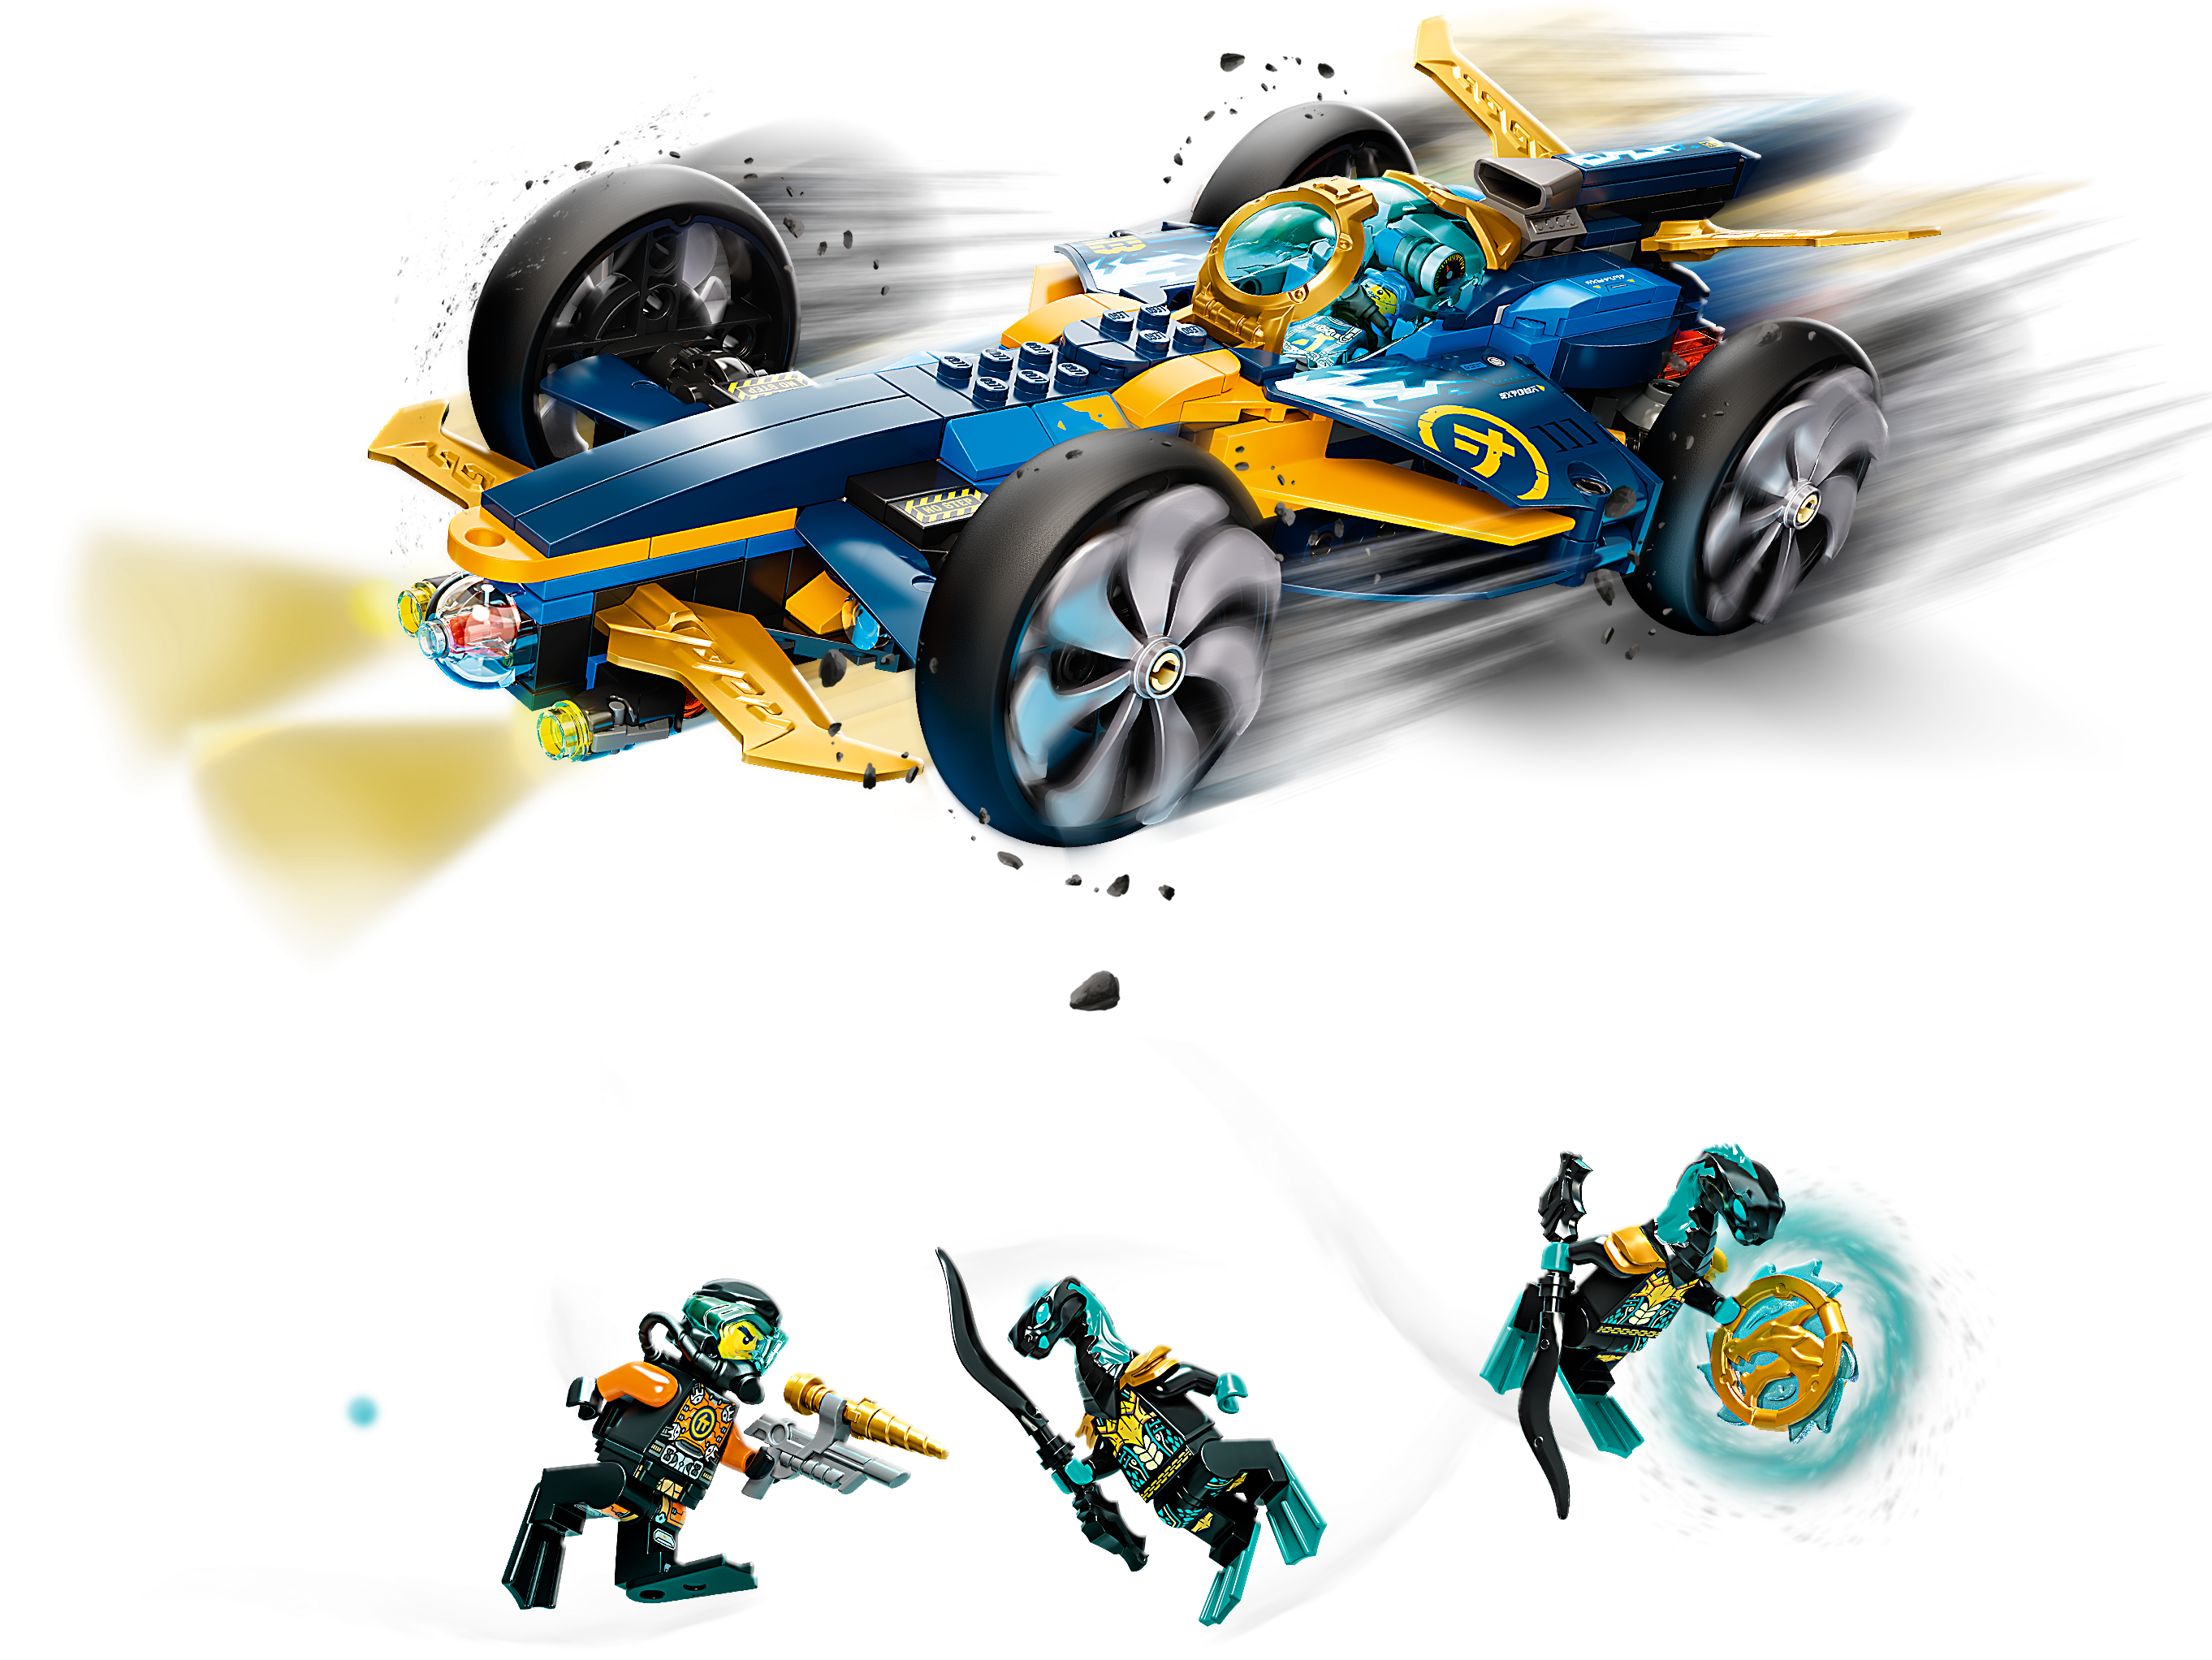 sous-Marin et Voiture avec Mini Figurines de Cole et Jay /& 71745 Ninjago La Moto de la Jungle de Lloyd avec Les Minifigurines LEGO 71752 Ninjago Le Bolide Ninja sous-Marin Set de Construction